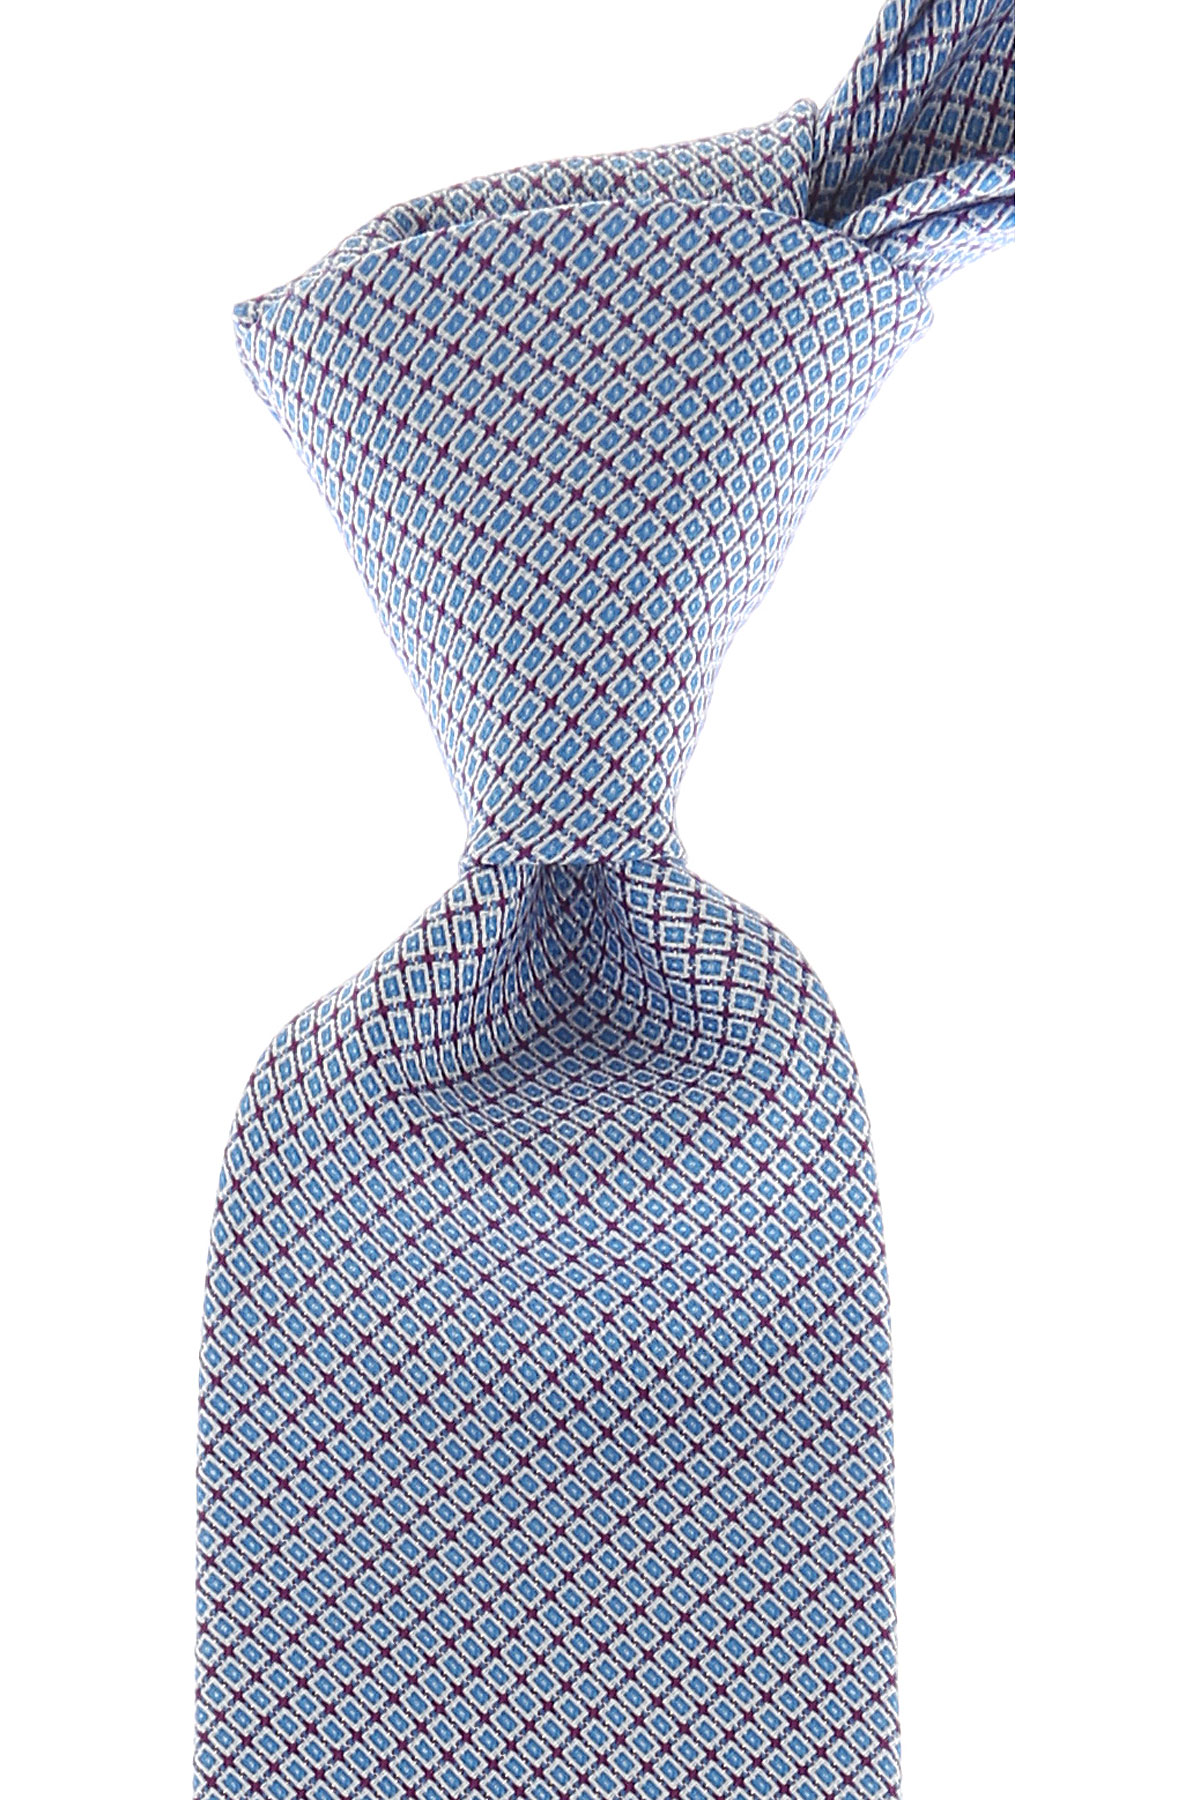 Cravates Kenzo , Bleu ciel clair, Soie, 2017